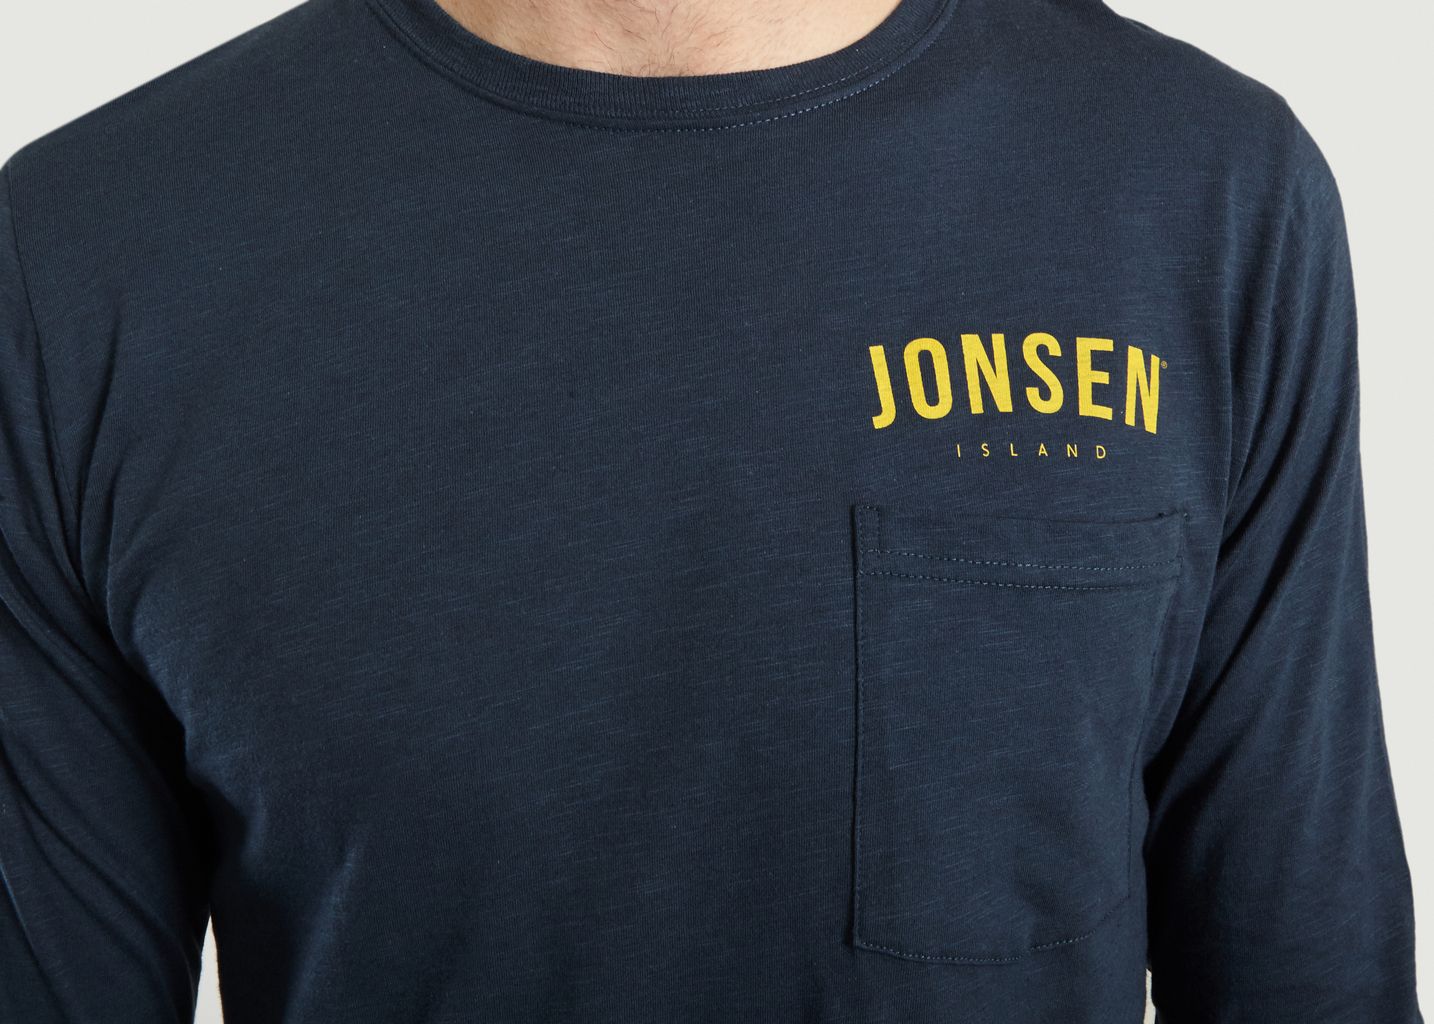 Shaper Beer T-shirt - Jonsen Island